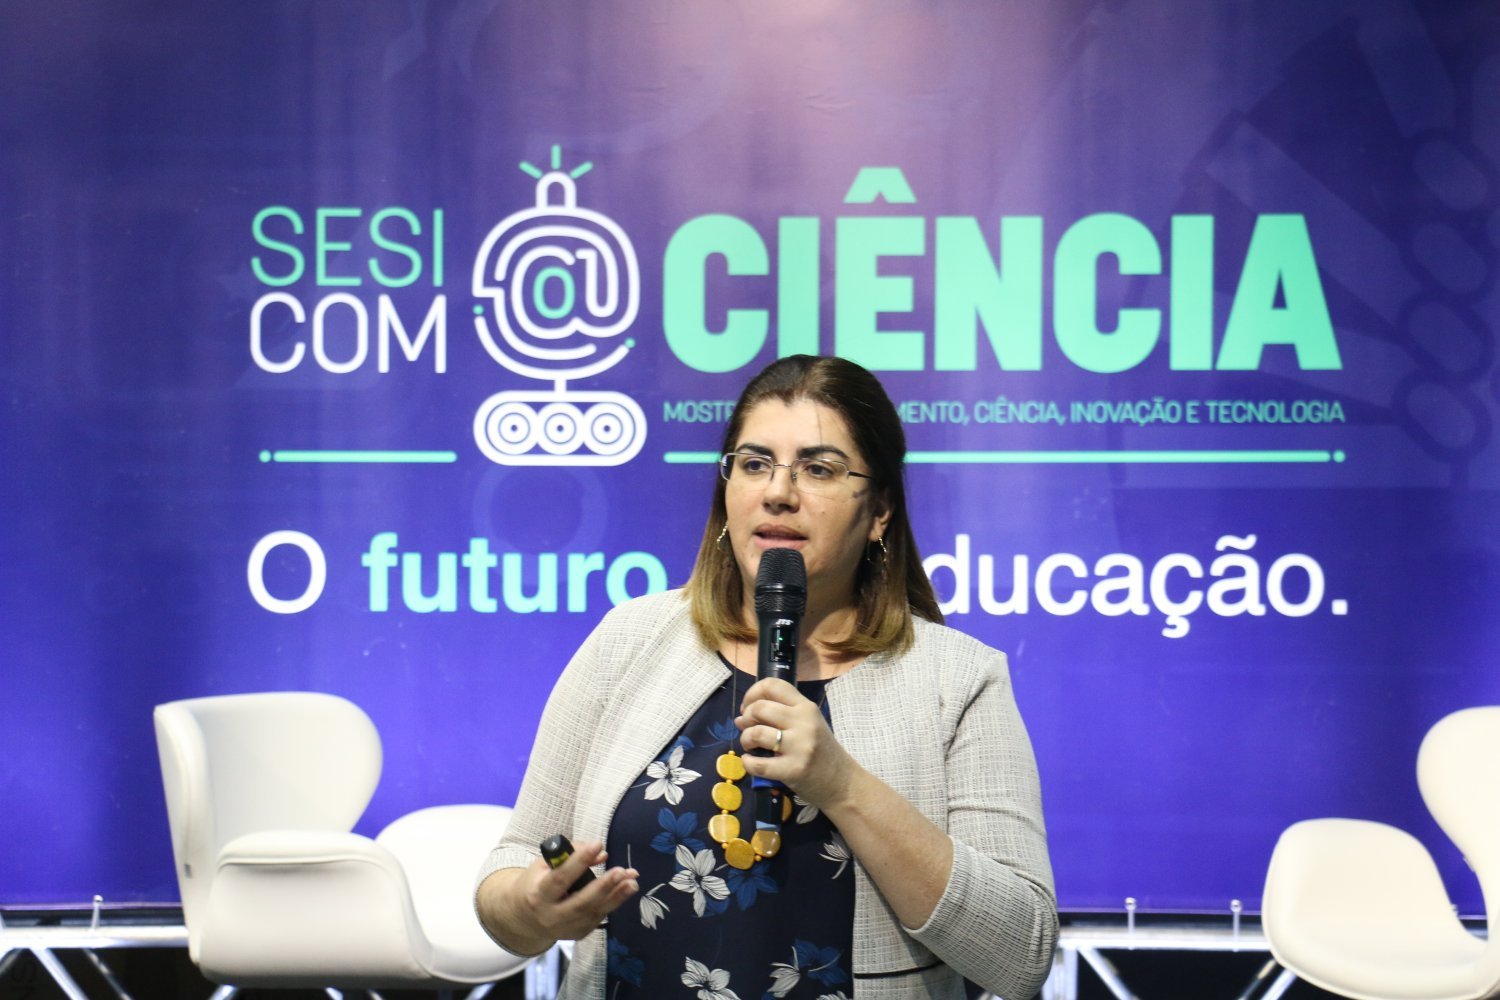 Sesi com@Ciência - Debora Garofalo